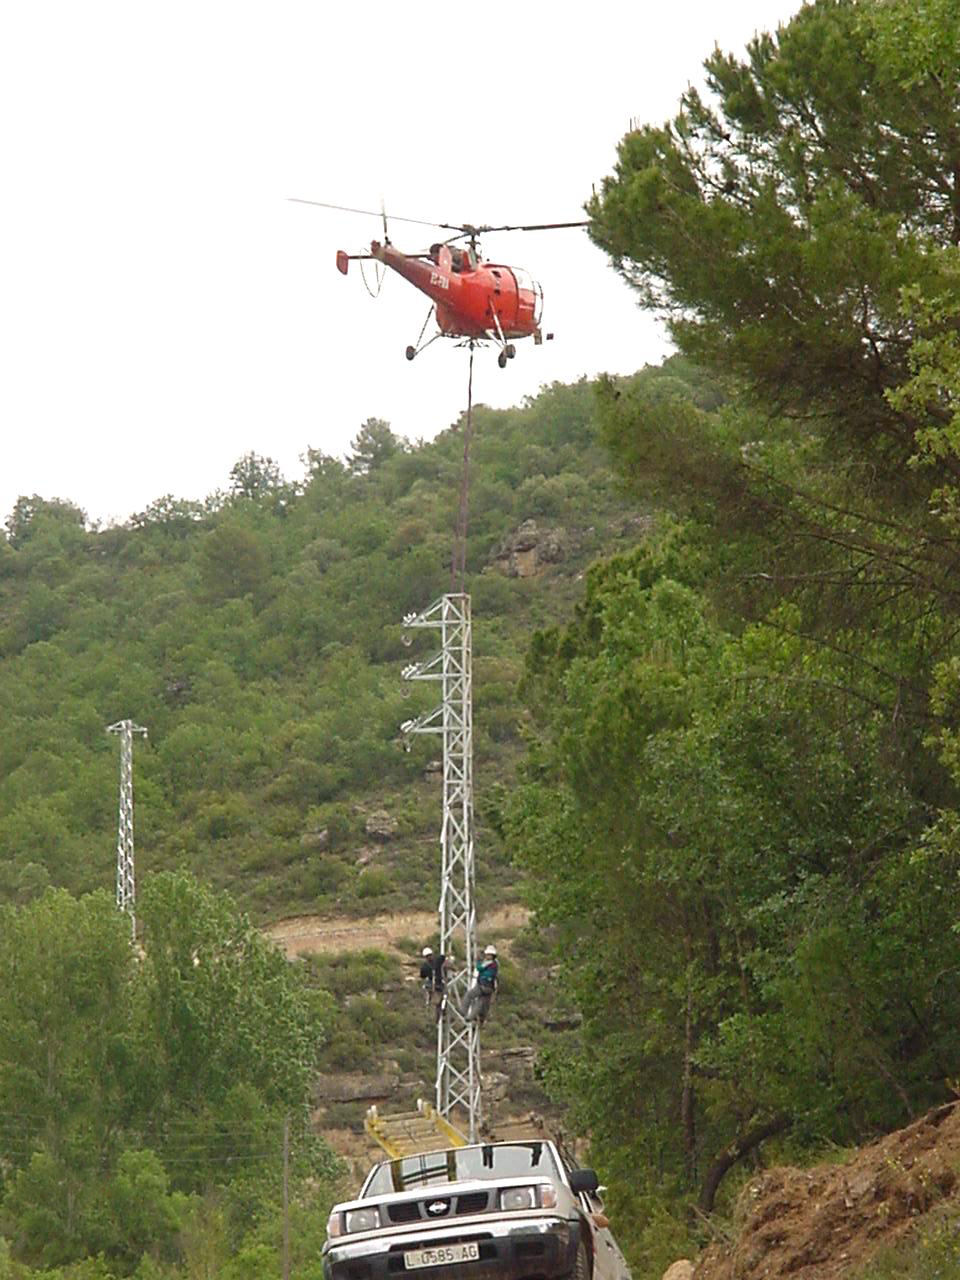 Helicòpter ajudant en el Manteniment i avaries